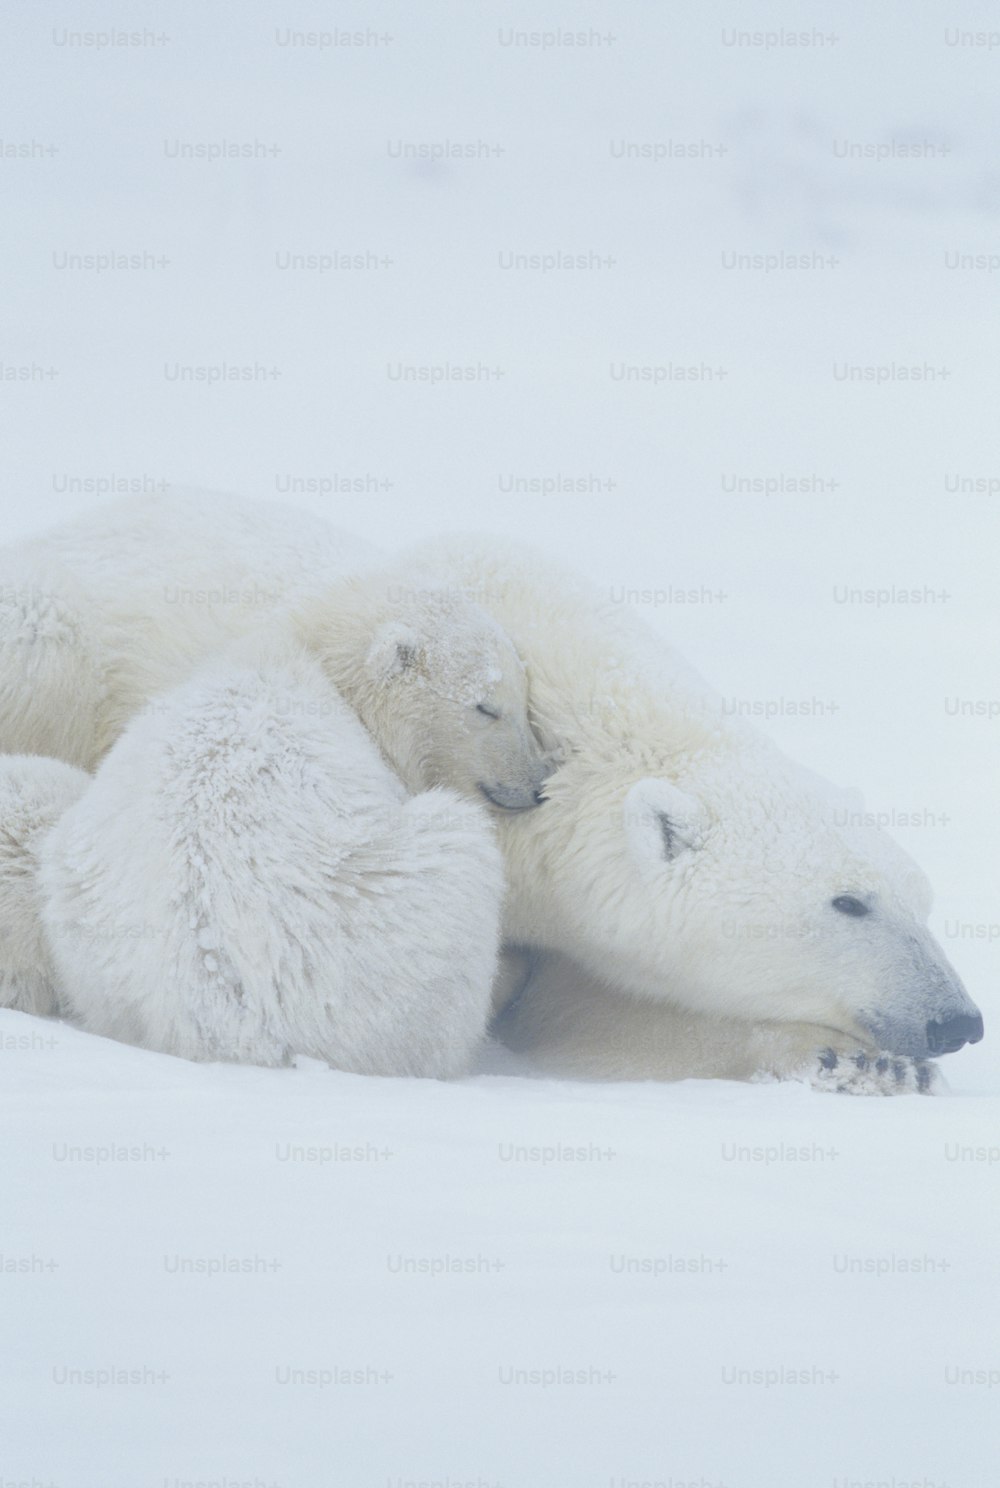 Dos osos polares yacen en la nieve